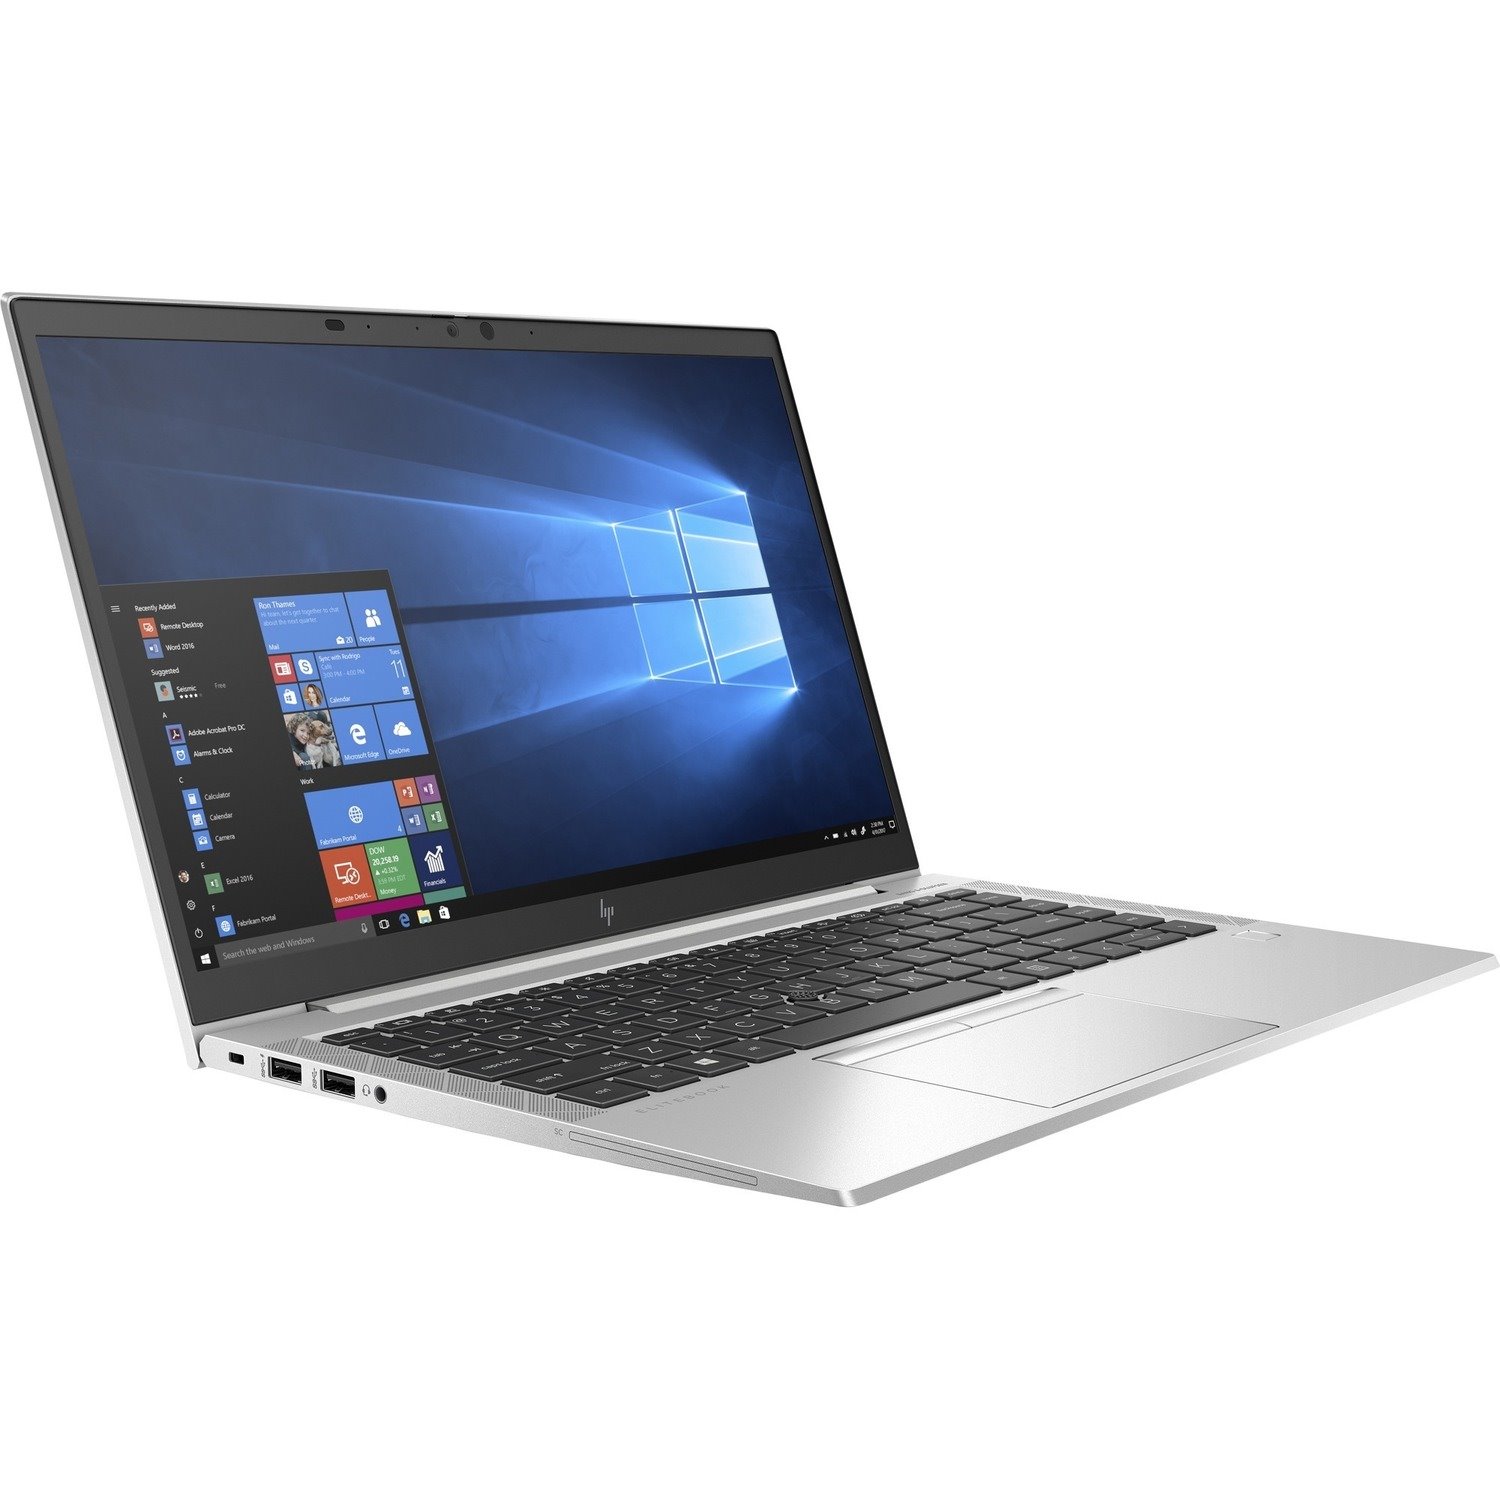 HP EliteBook 840 G7 35.6 cm (14") Notebook - Full HD - 1920 x 1080 - Intel Core i5 10th Gen i5-10210U Quad-core (4 Core) 1.60 GHz - 16 GB Total RAM - 256 GB SSD